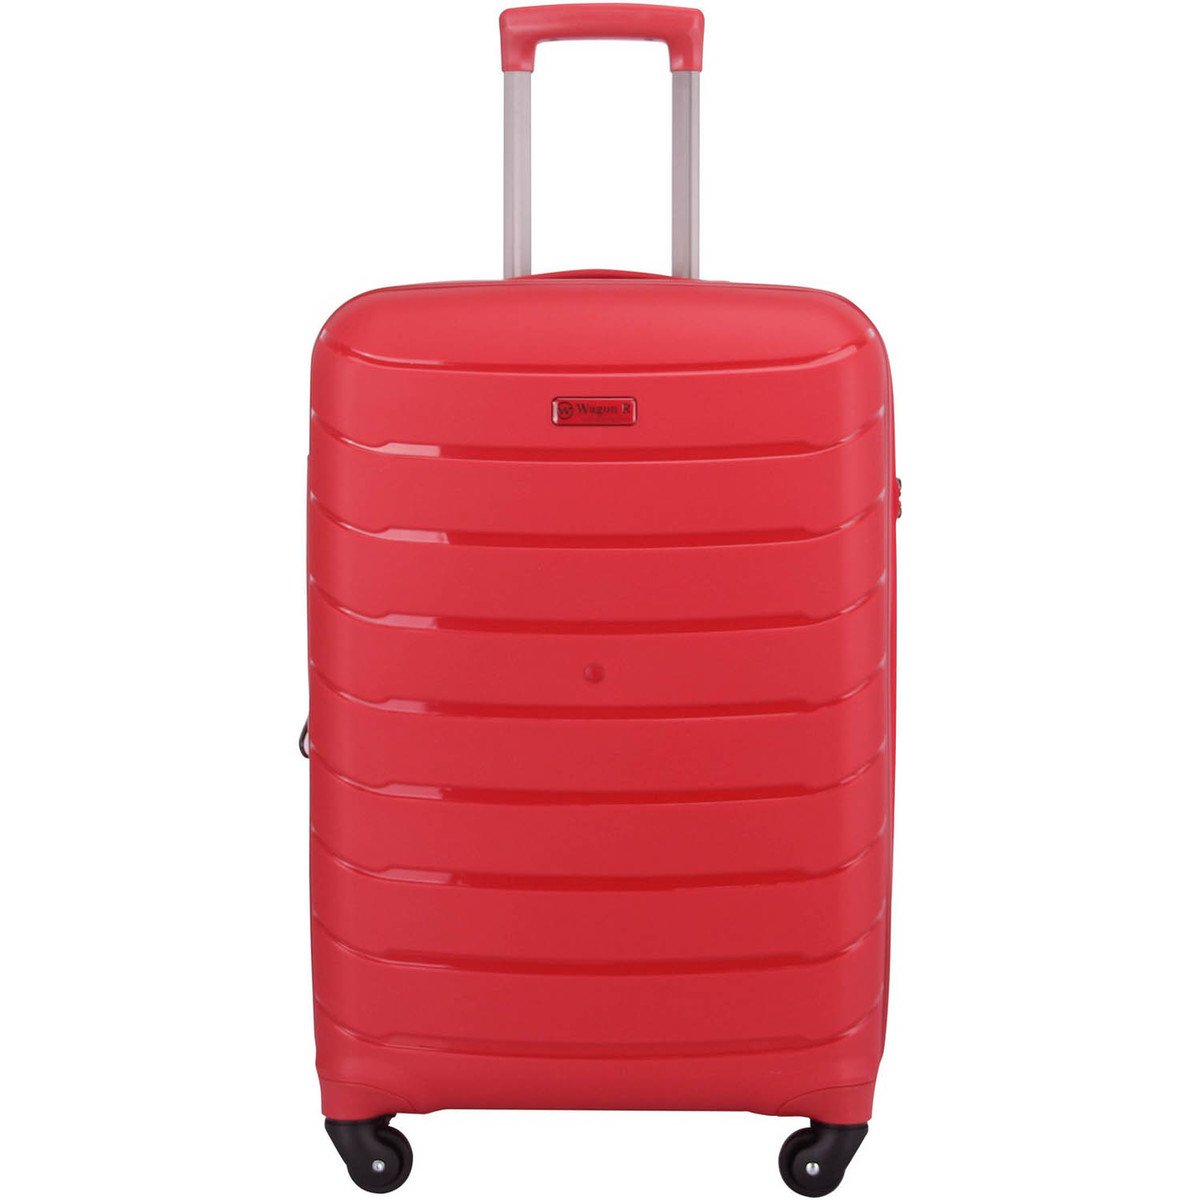 Best Travel Bags Luggage Bags - Trolley Bags At LuLu hypermarket